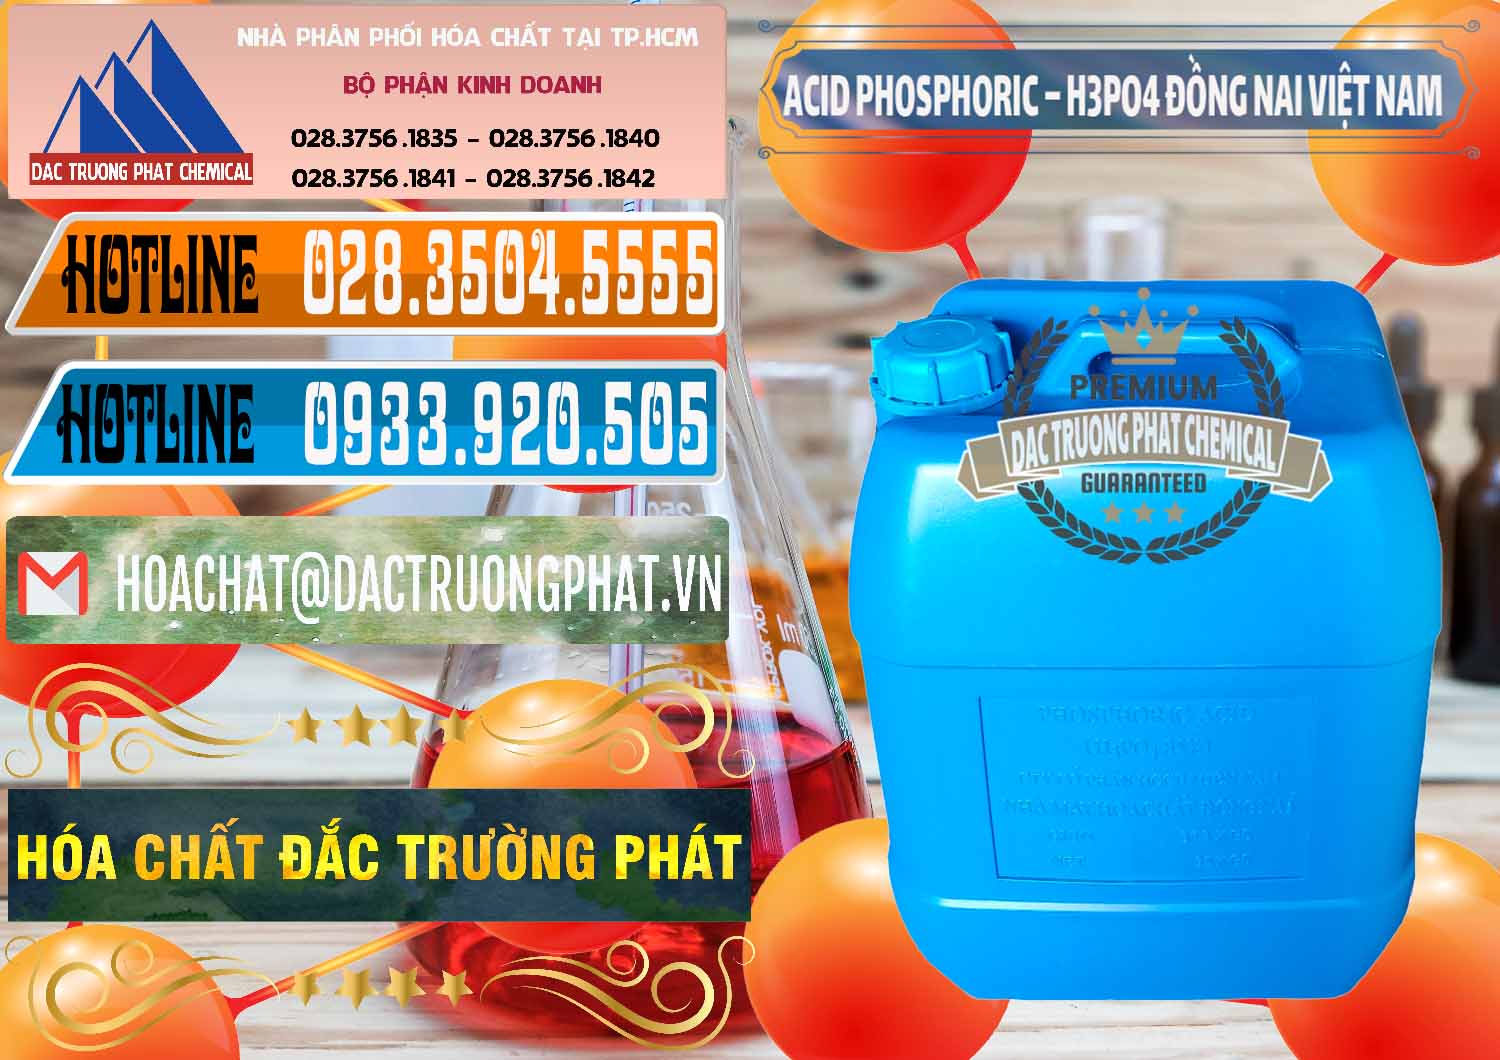 Công ty cung cấp & bán Acid Phosphoric – Axit Phosphoric 85% Đồng Nai Việt Nam - 0183 - Nơi cung cấp và phân phối hóa chất tại TP.HCM - stmp.net